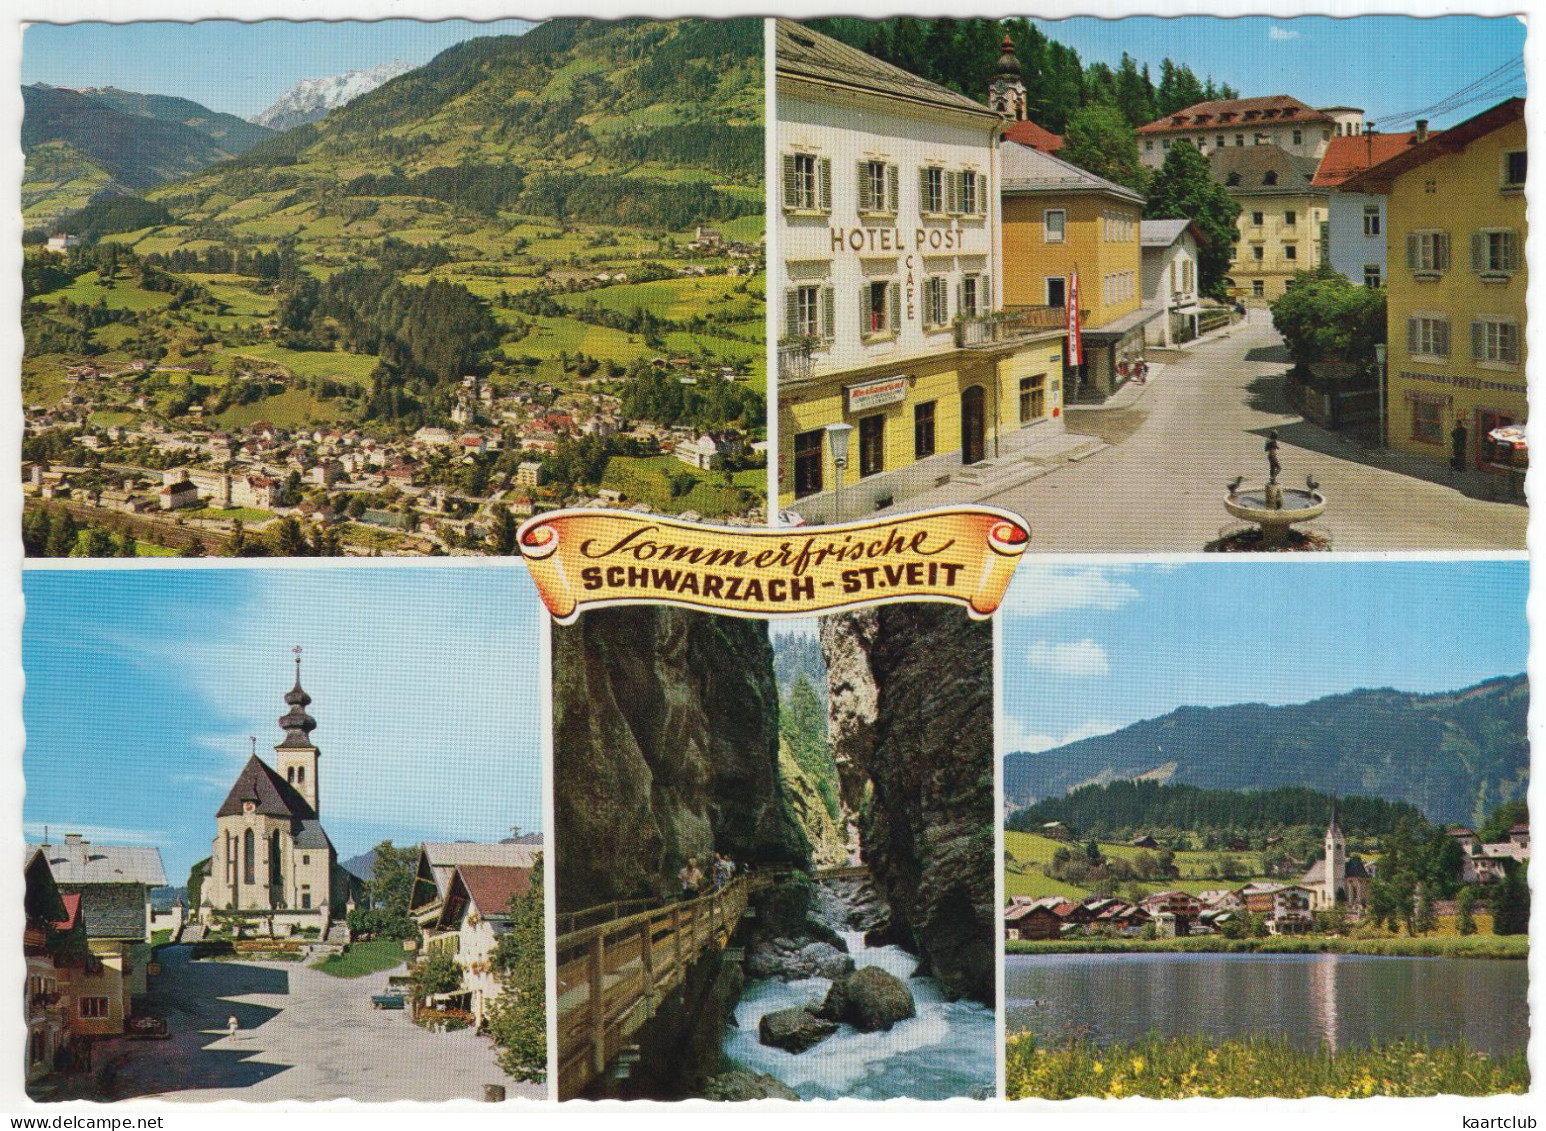 Sommerfrische Schwarzach-St. Veit - Ort Geg. Hochkönig, St. Veit Liechtensteinklamm Goldegg - (Österreich/Austria) - St. Veit An Der Glan